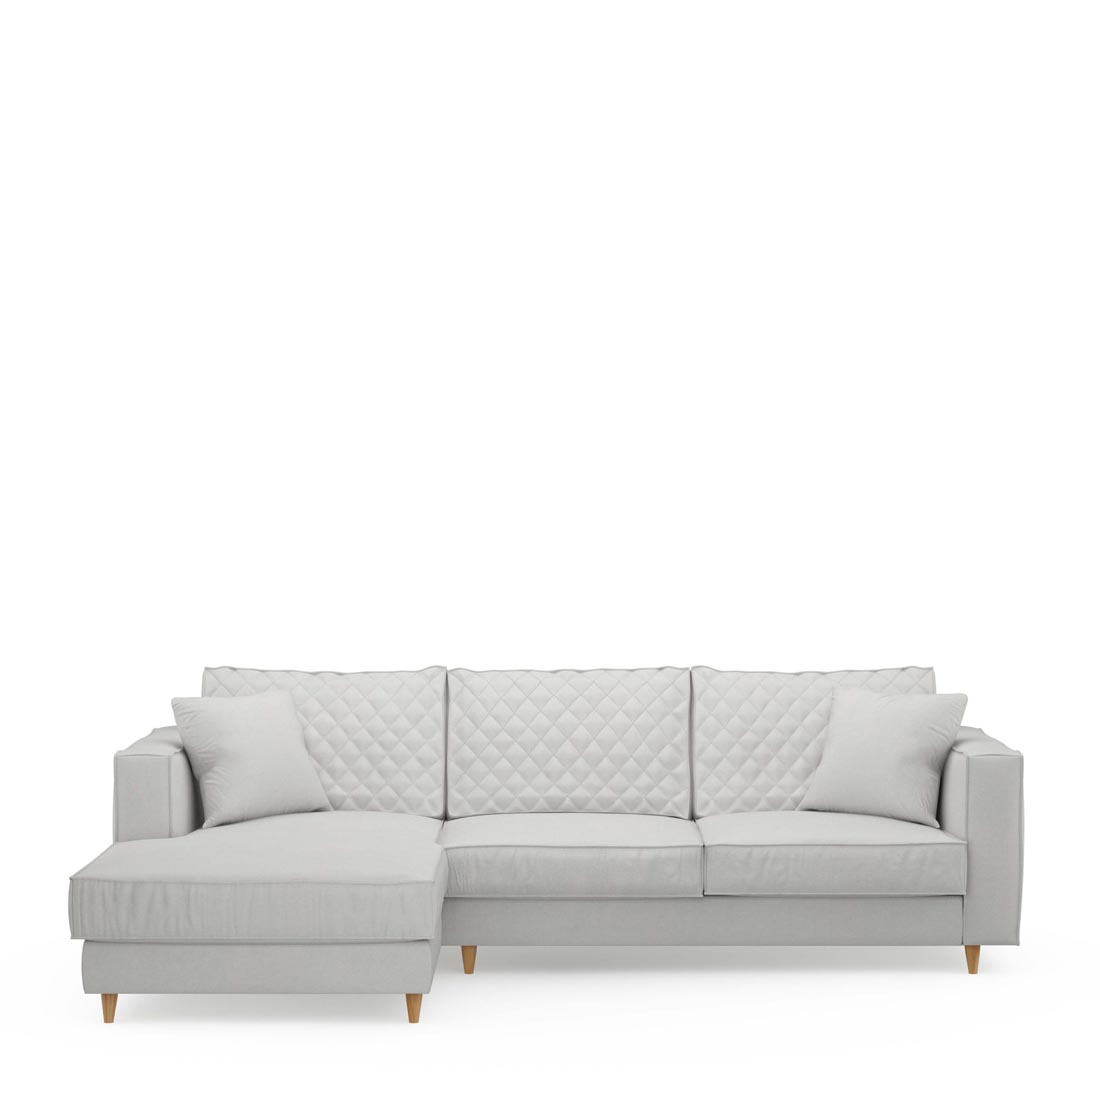 Rivièra Maison - Kendall Sofa With Chaise Longue Left, washed cotton, ash grey - Kleur: Asgrijs